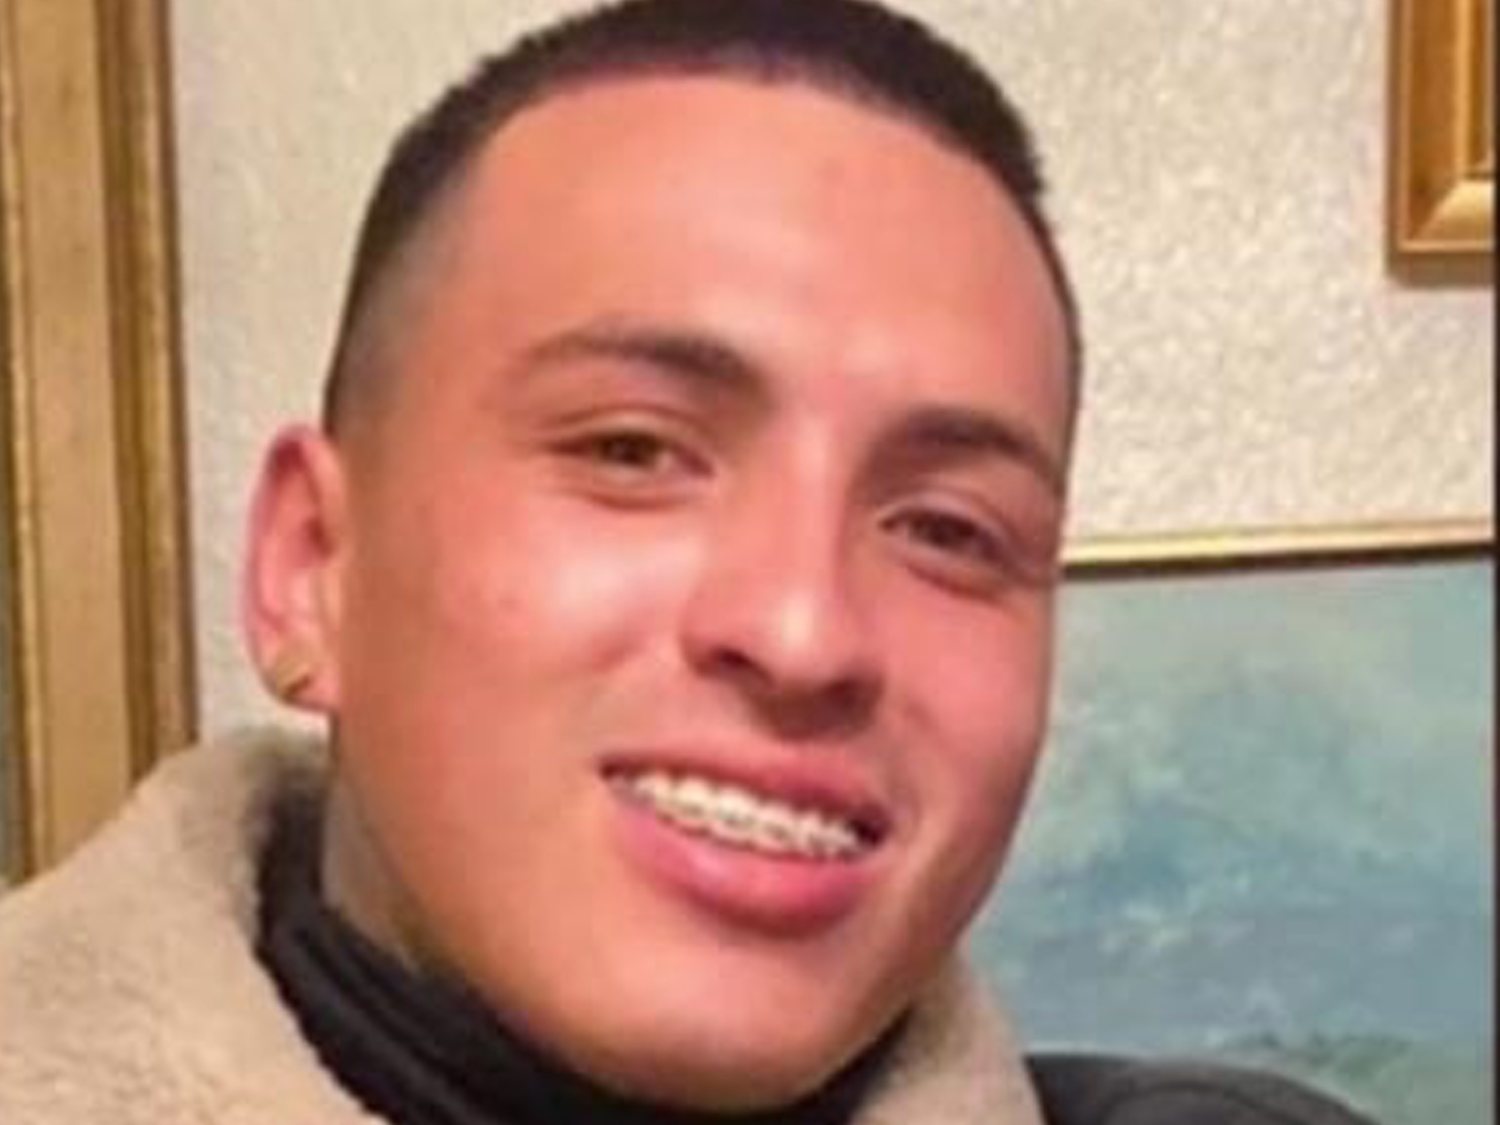 La policía de California asesina a un joven hispano desarmado, arrodillado y con las manos arriba